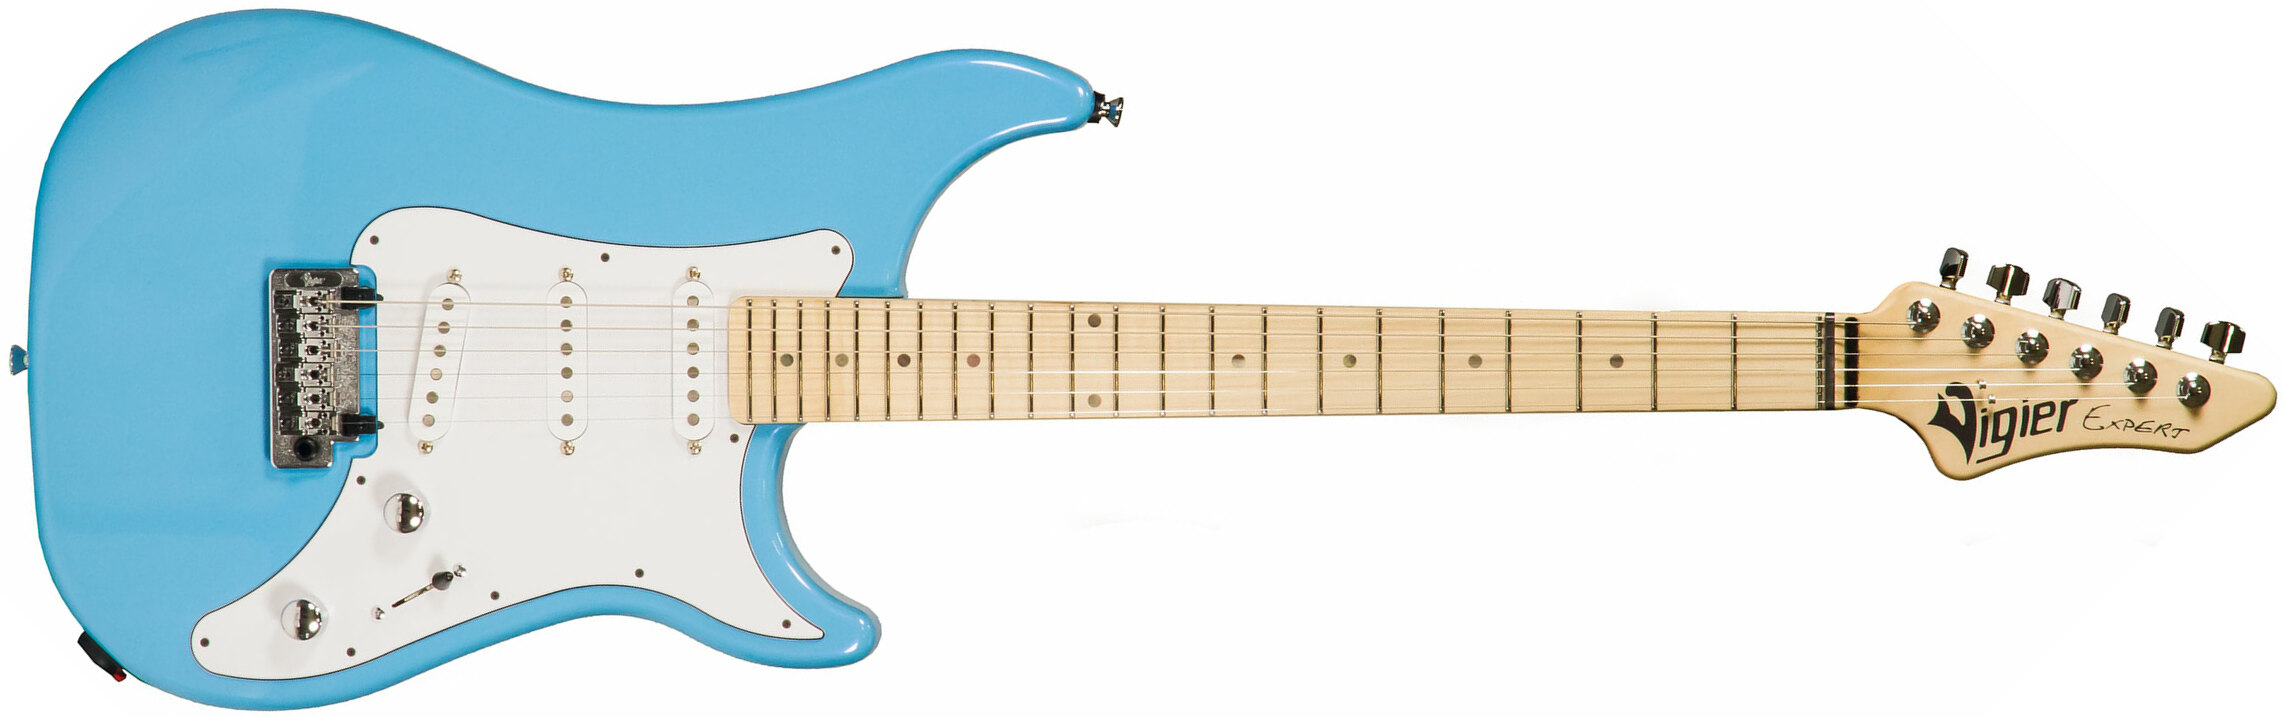 Vigier Expert Classic Rock Sss Trem Mn - Normandie Blue - Str shape electric guitar - Main picture